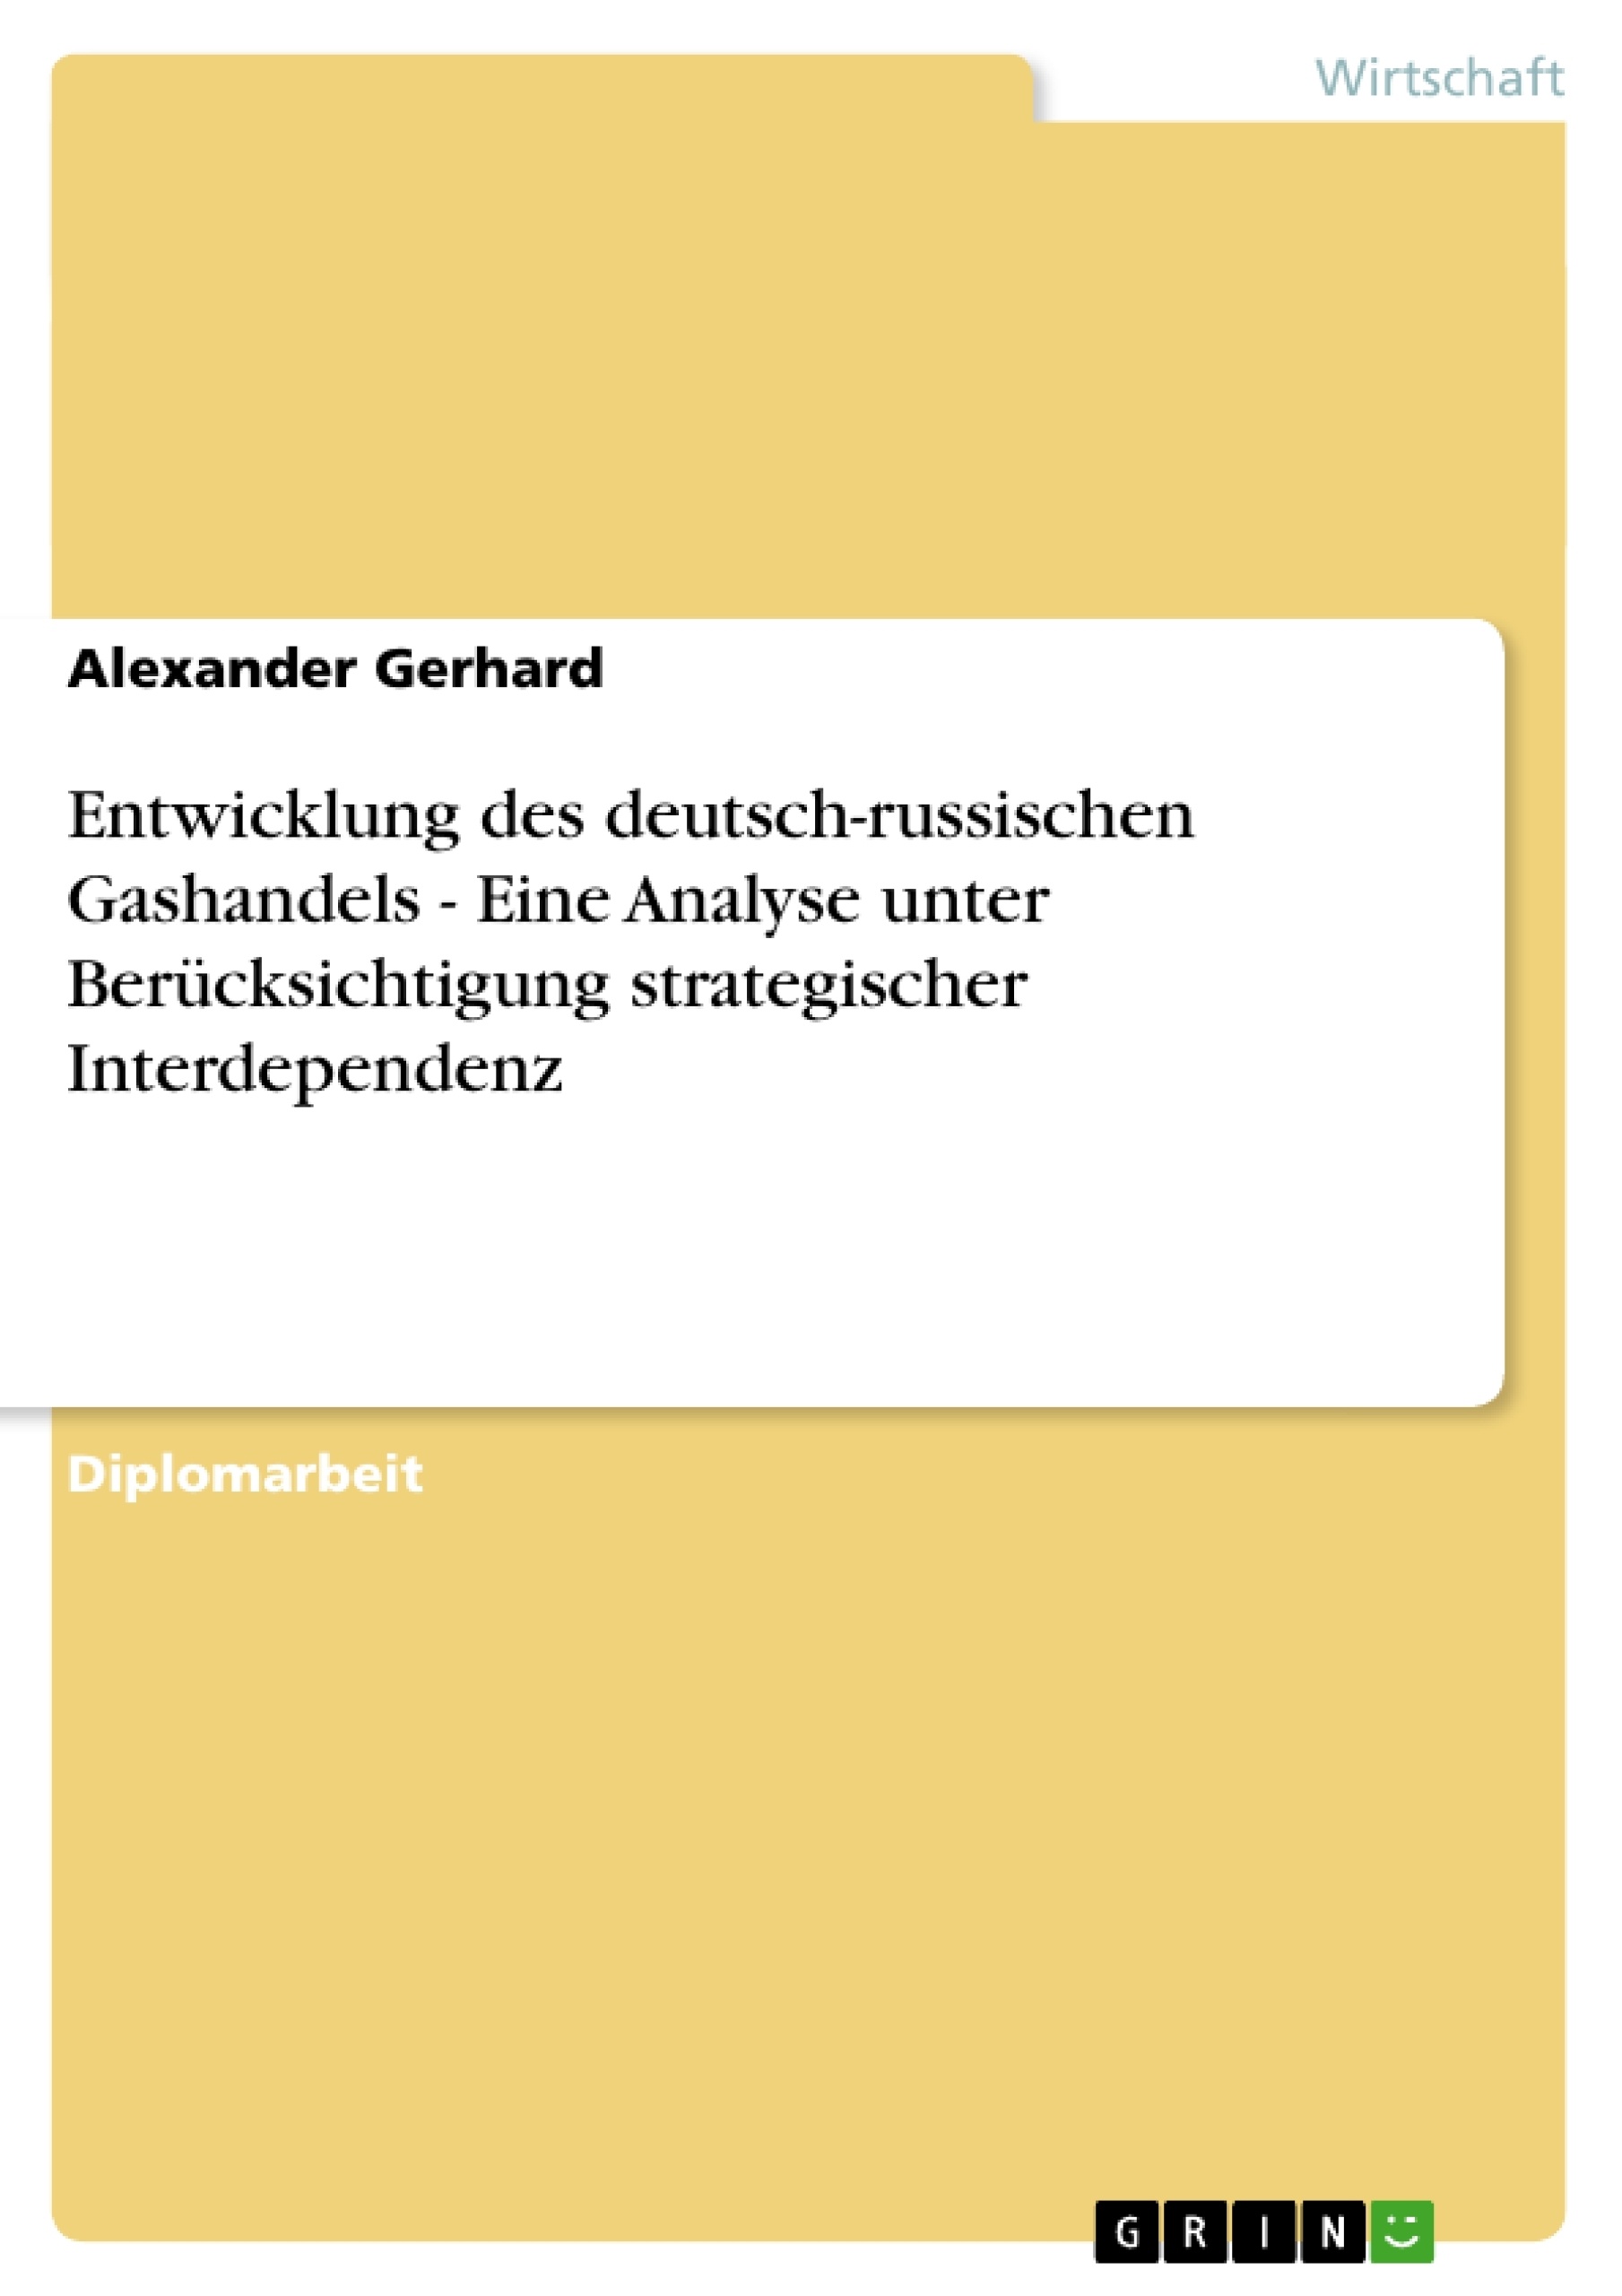 Title: Entwicklung des deutsch-russischen Gashandels - Eine Analyse unter Berücksichtigung strategischer Interdependenz